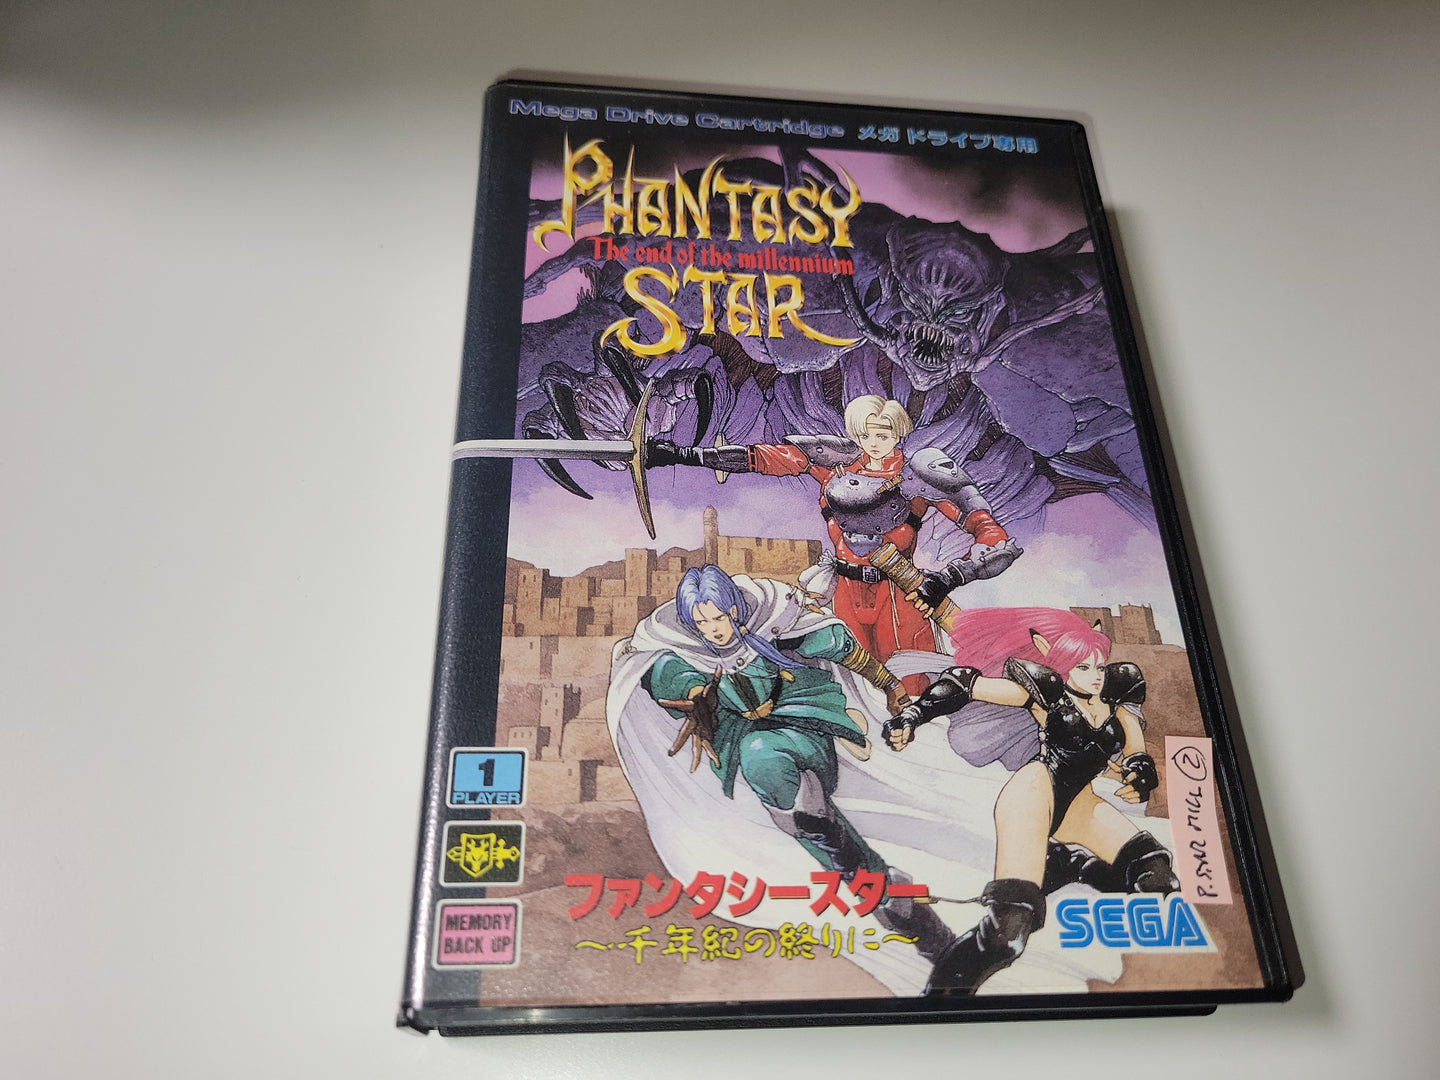 Phantasy star IV - Sega MD MegaDrive